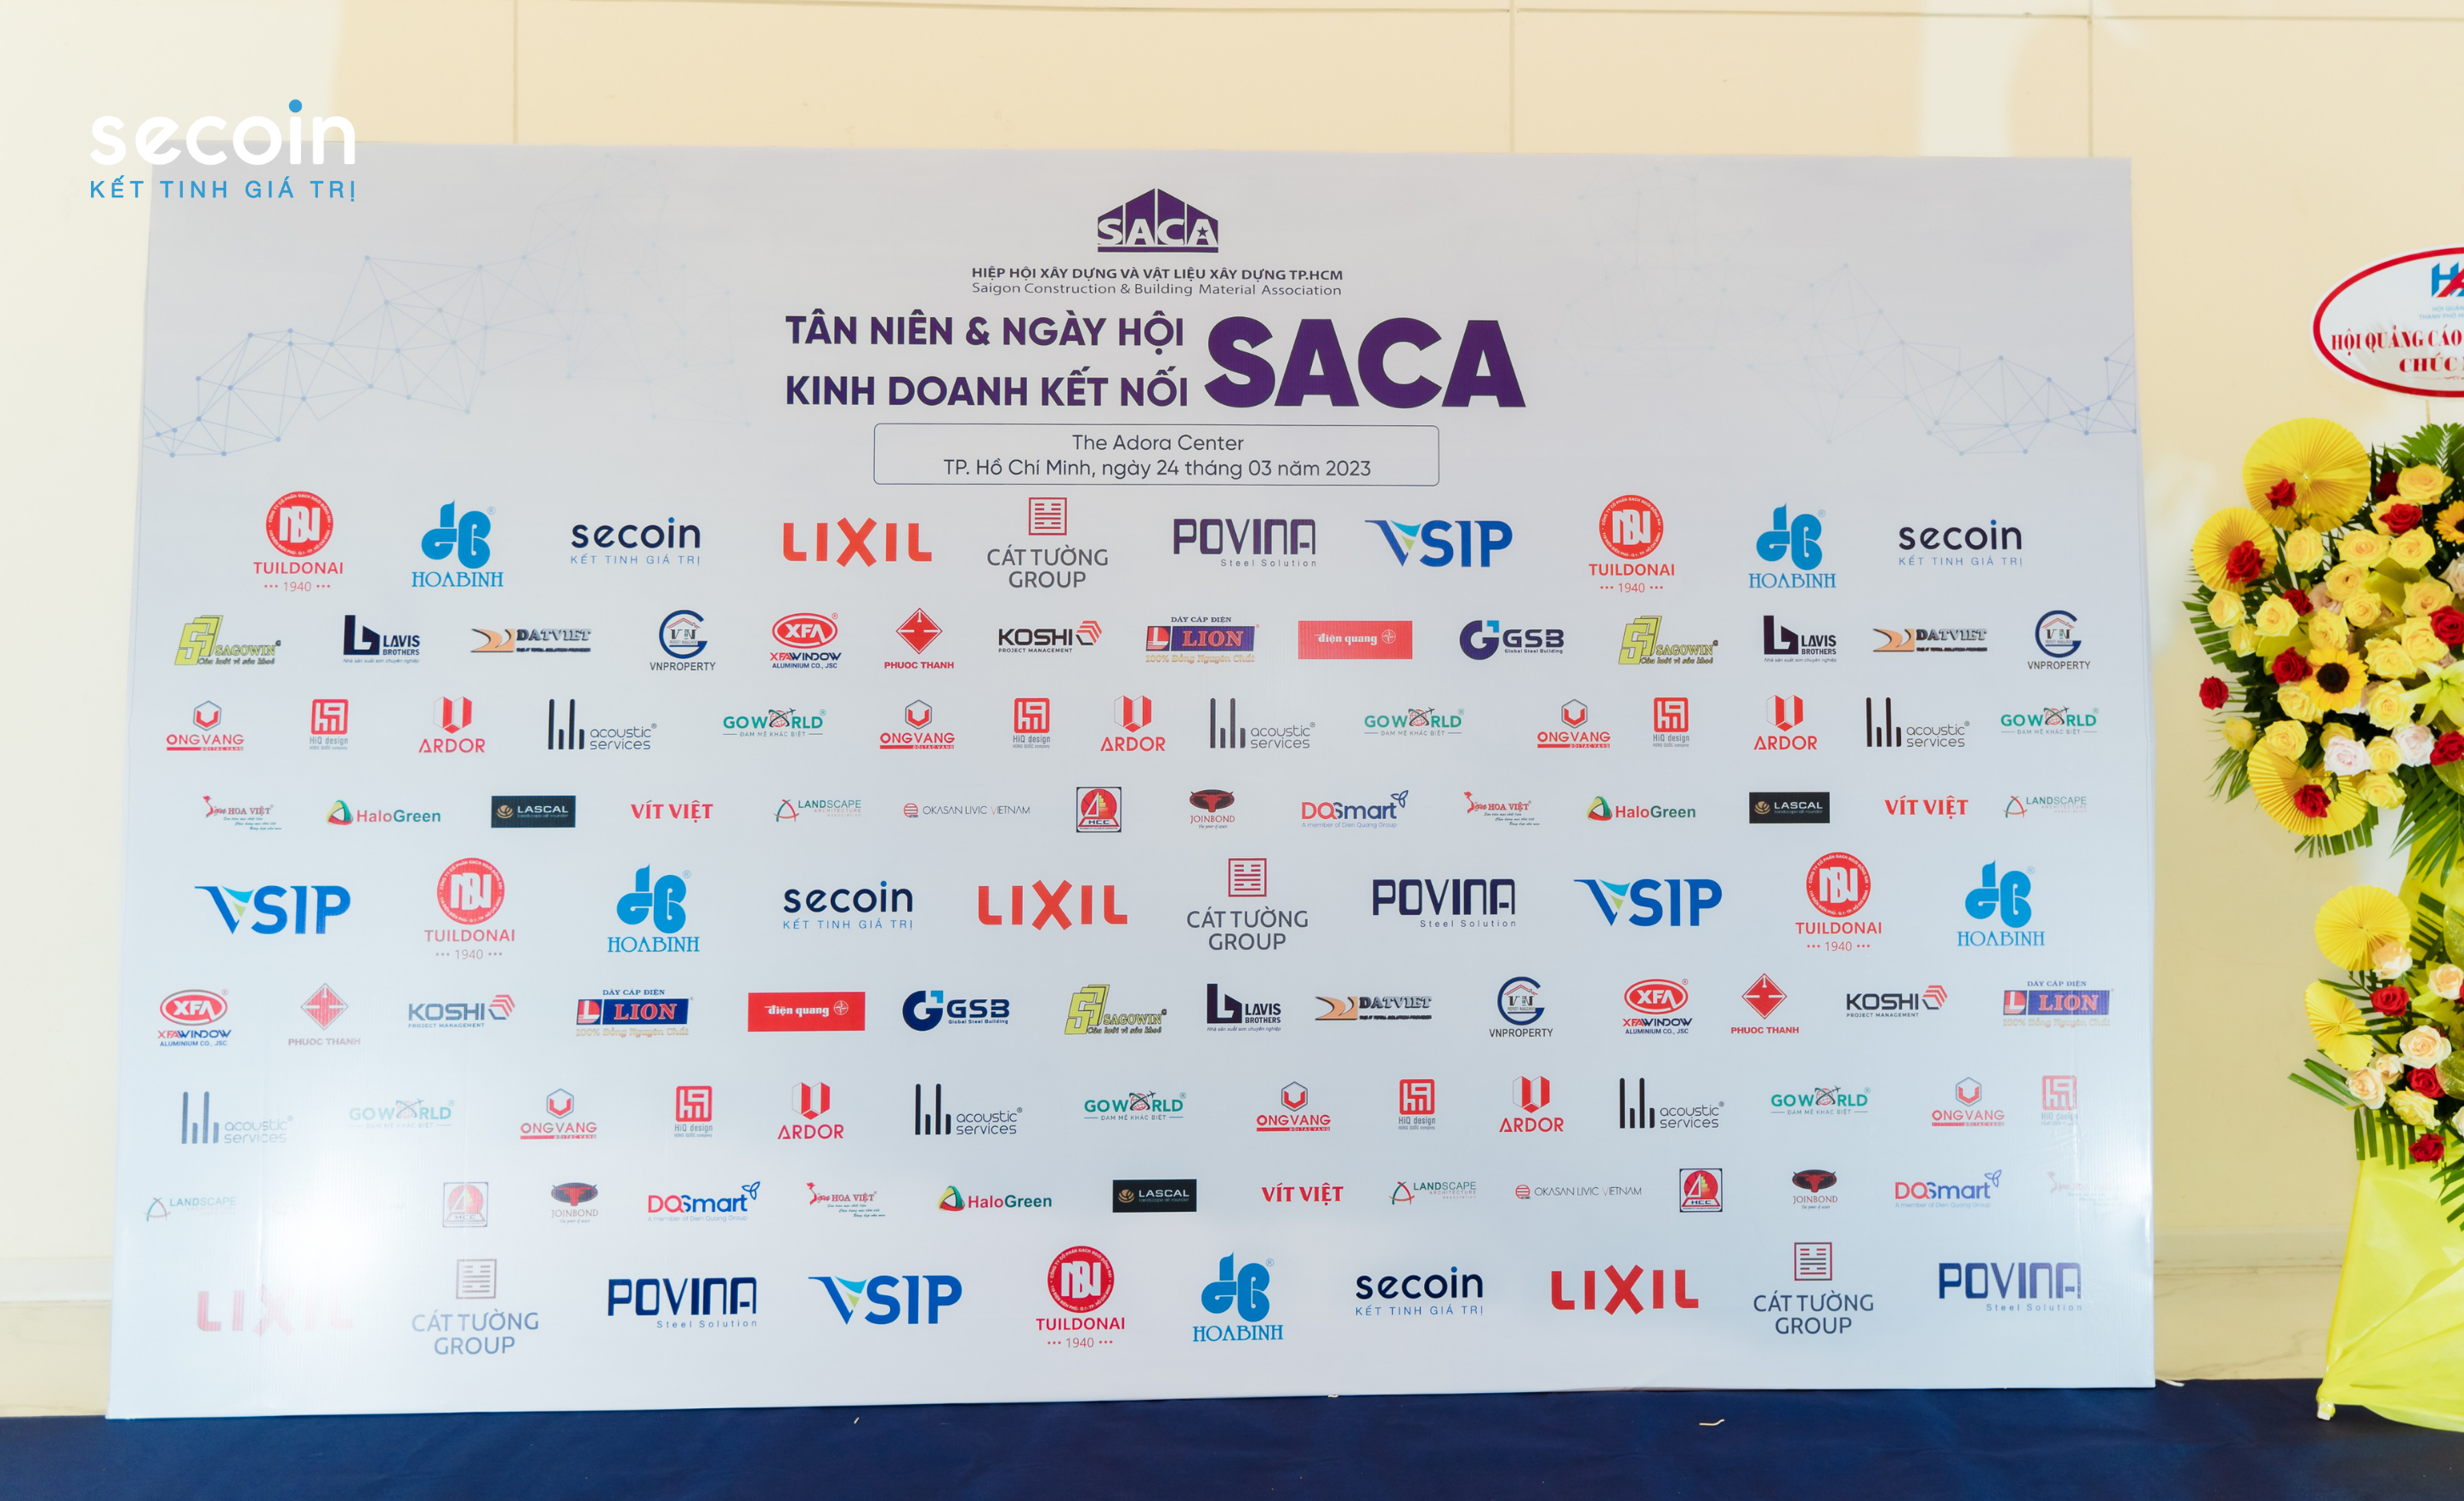 Secoin tham gia chương trình Tân niên và ngày hội kinh doanh kết nối Saca tháng 3/2023